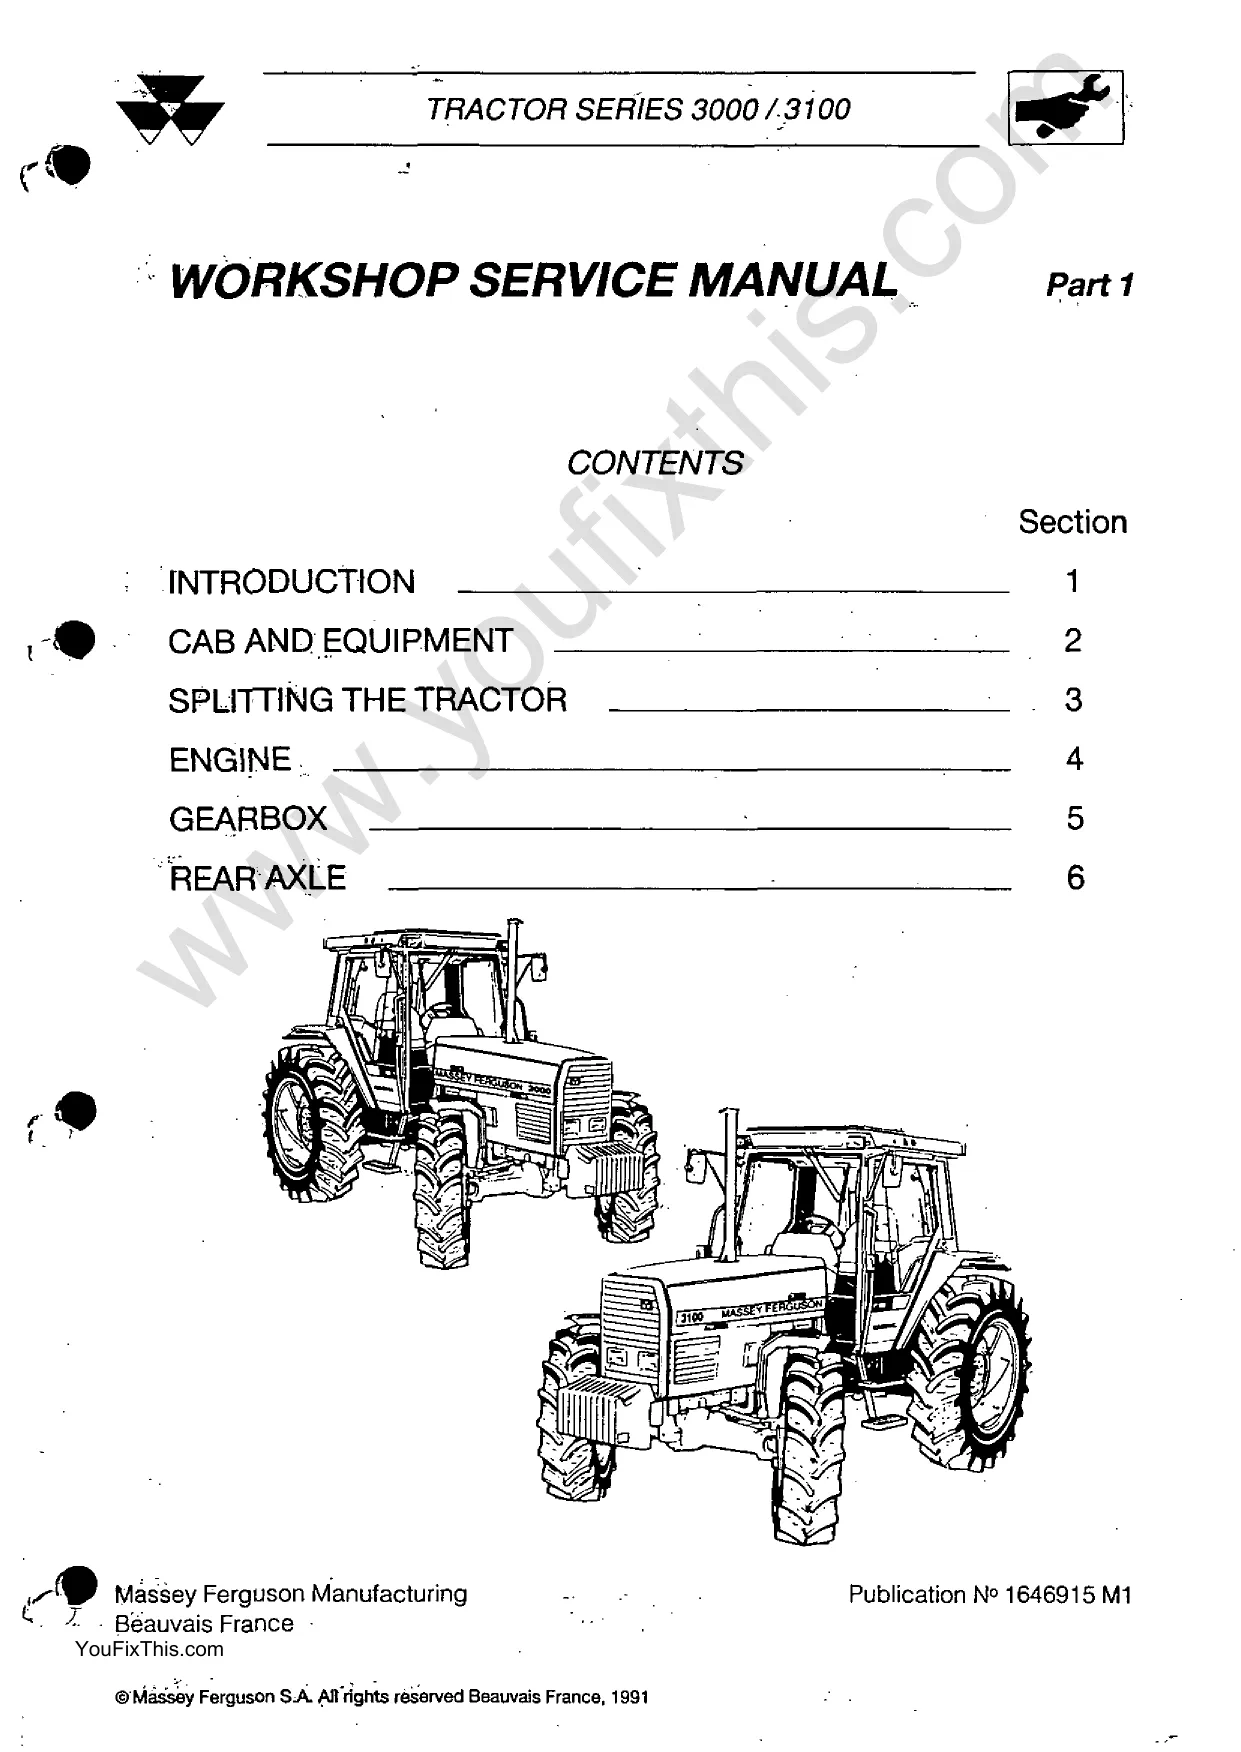 Massey Ferguson 3050, 3060, 3065, 3070, 3080, 3095, 3100, 3115, 3120, 3125, 3140 Row-Crop tractor repair manual Preview image 1